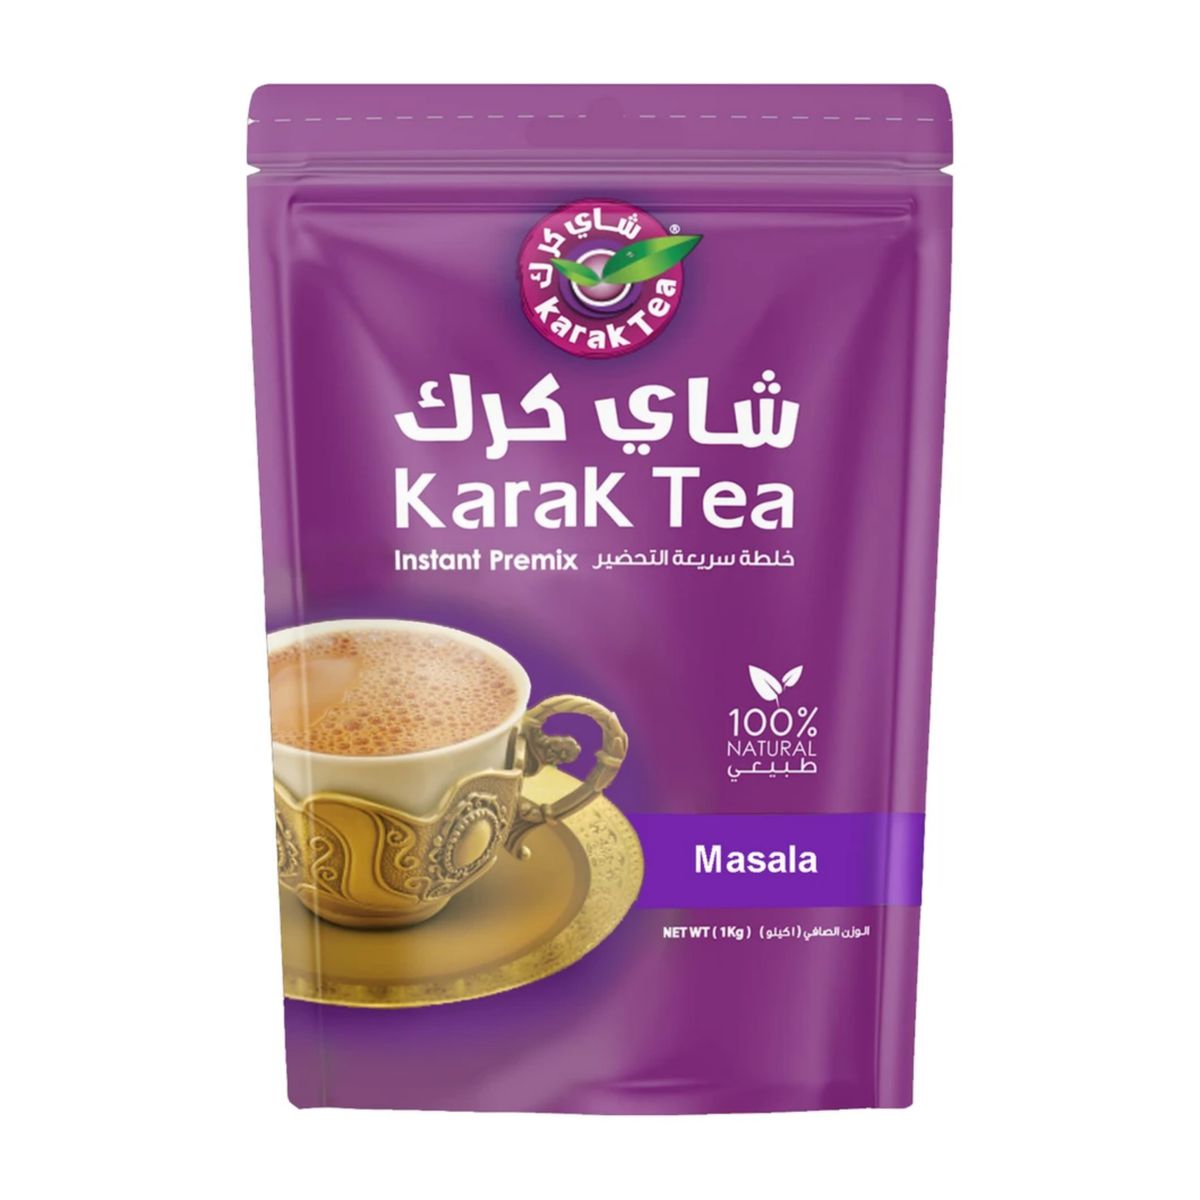 شیر چای ماسالای Karak بسته 30 تایی